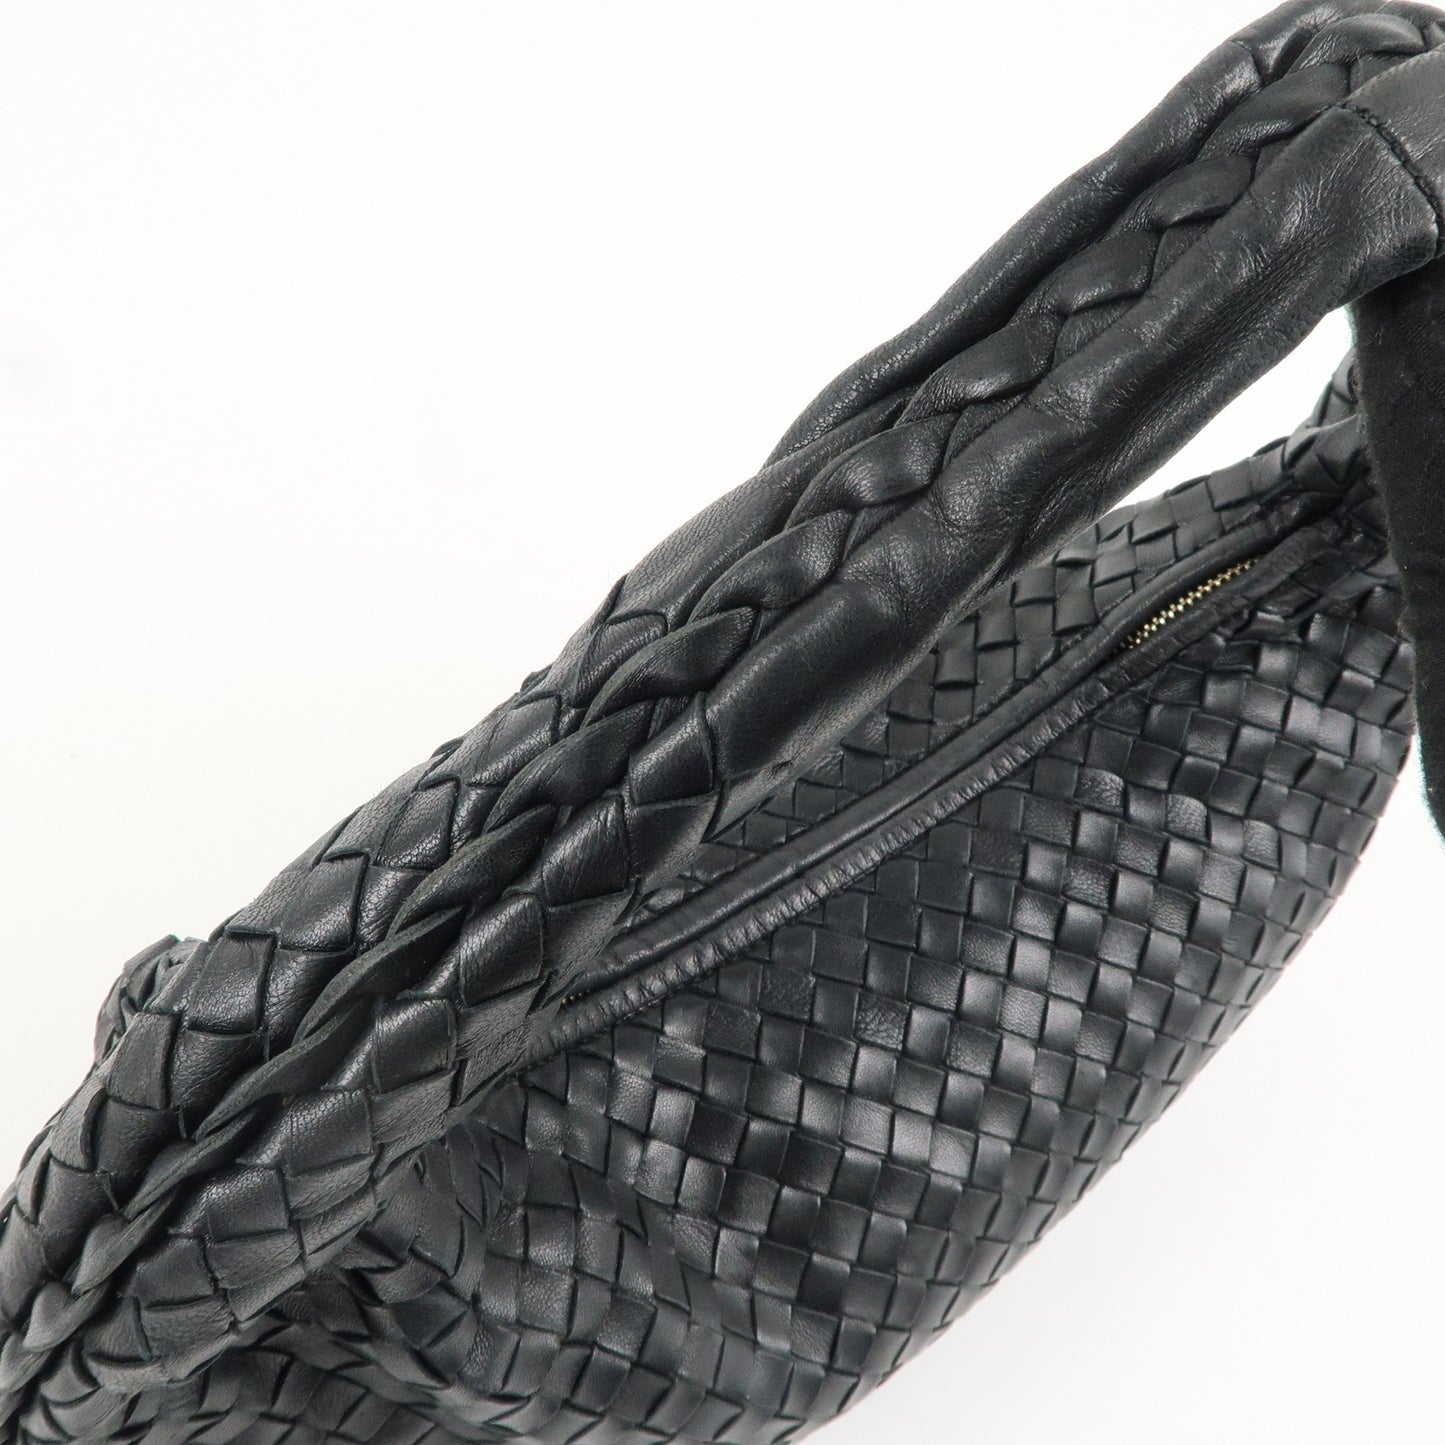 BOTTEGA VENETA Hobo Intrecciato Leather Shoulder Bag Black 115653